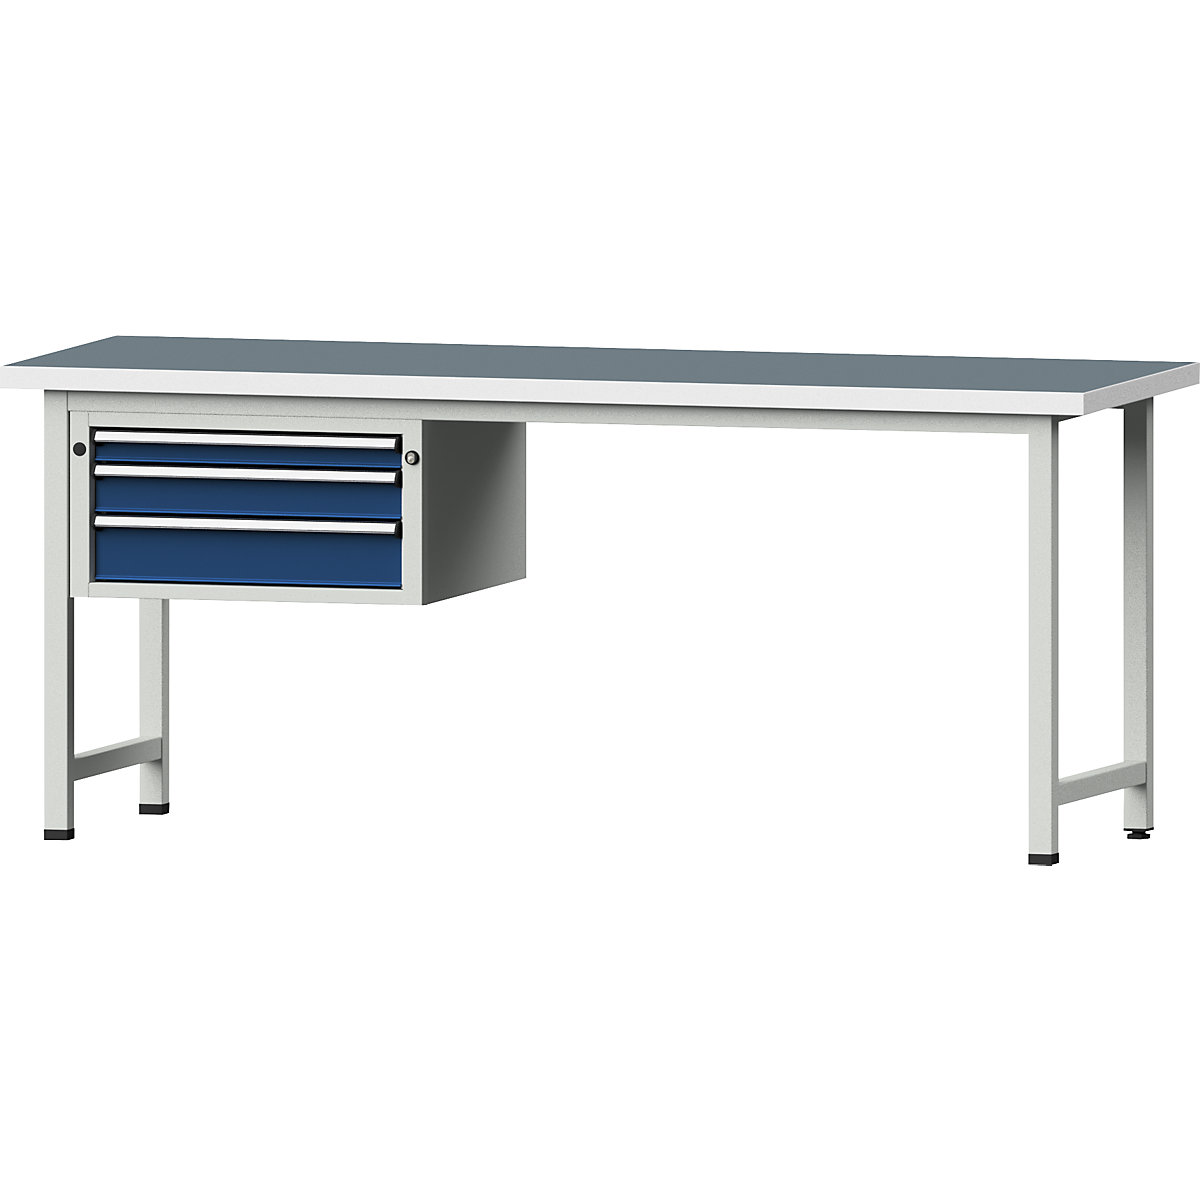 Dílenský stůl s rámovou konstrukcí – ANKE, 3 zásuvky, univerzální deska, šířka 2000 mm